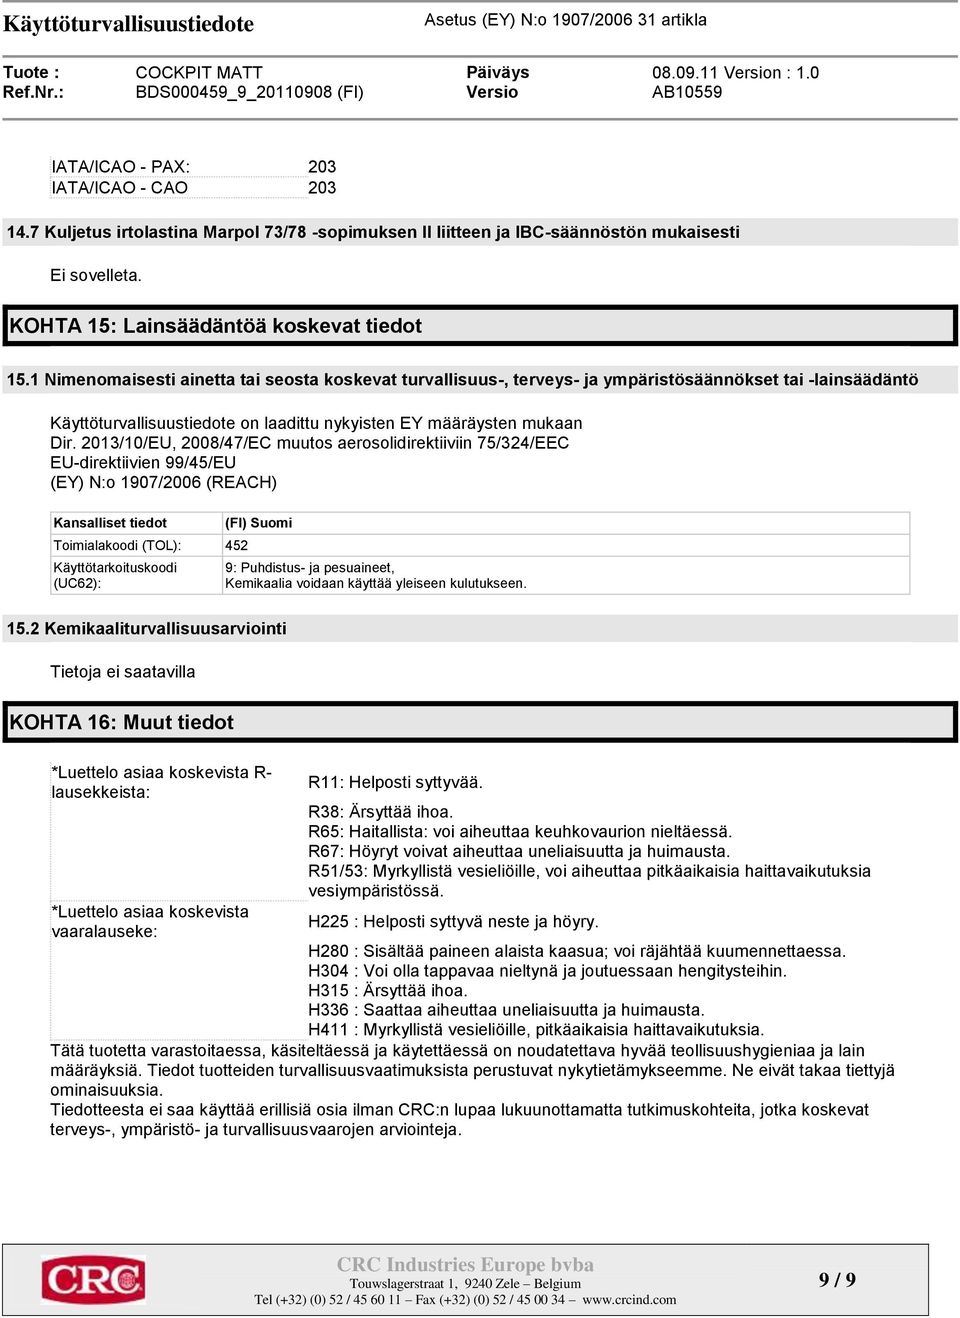 2013/10/EU, 2008/47/EC muutos aerosolidirektiiviin 75/324/EEC EU-direktiivien 99/45/EU (EY) N:o 1907/2006 (REACH) Kansalliset tiedot Toimialakoodi (TOL): 452 Käyttötarkoituskoodi (UC62): (FI) Suomi